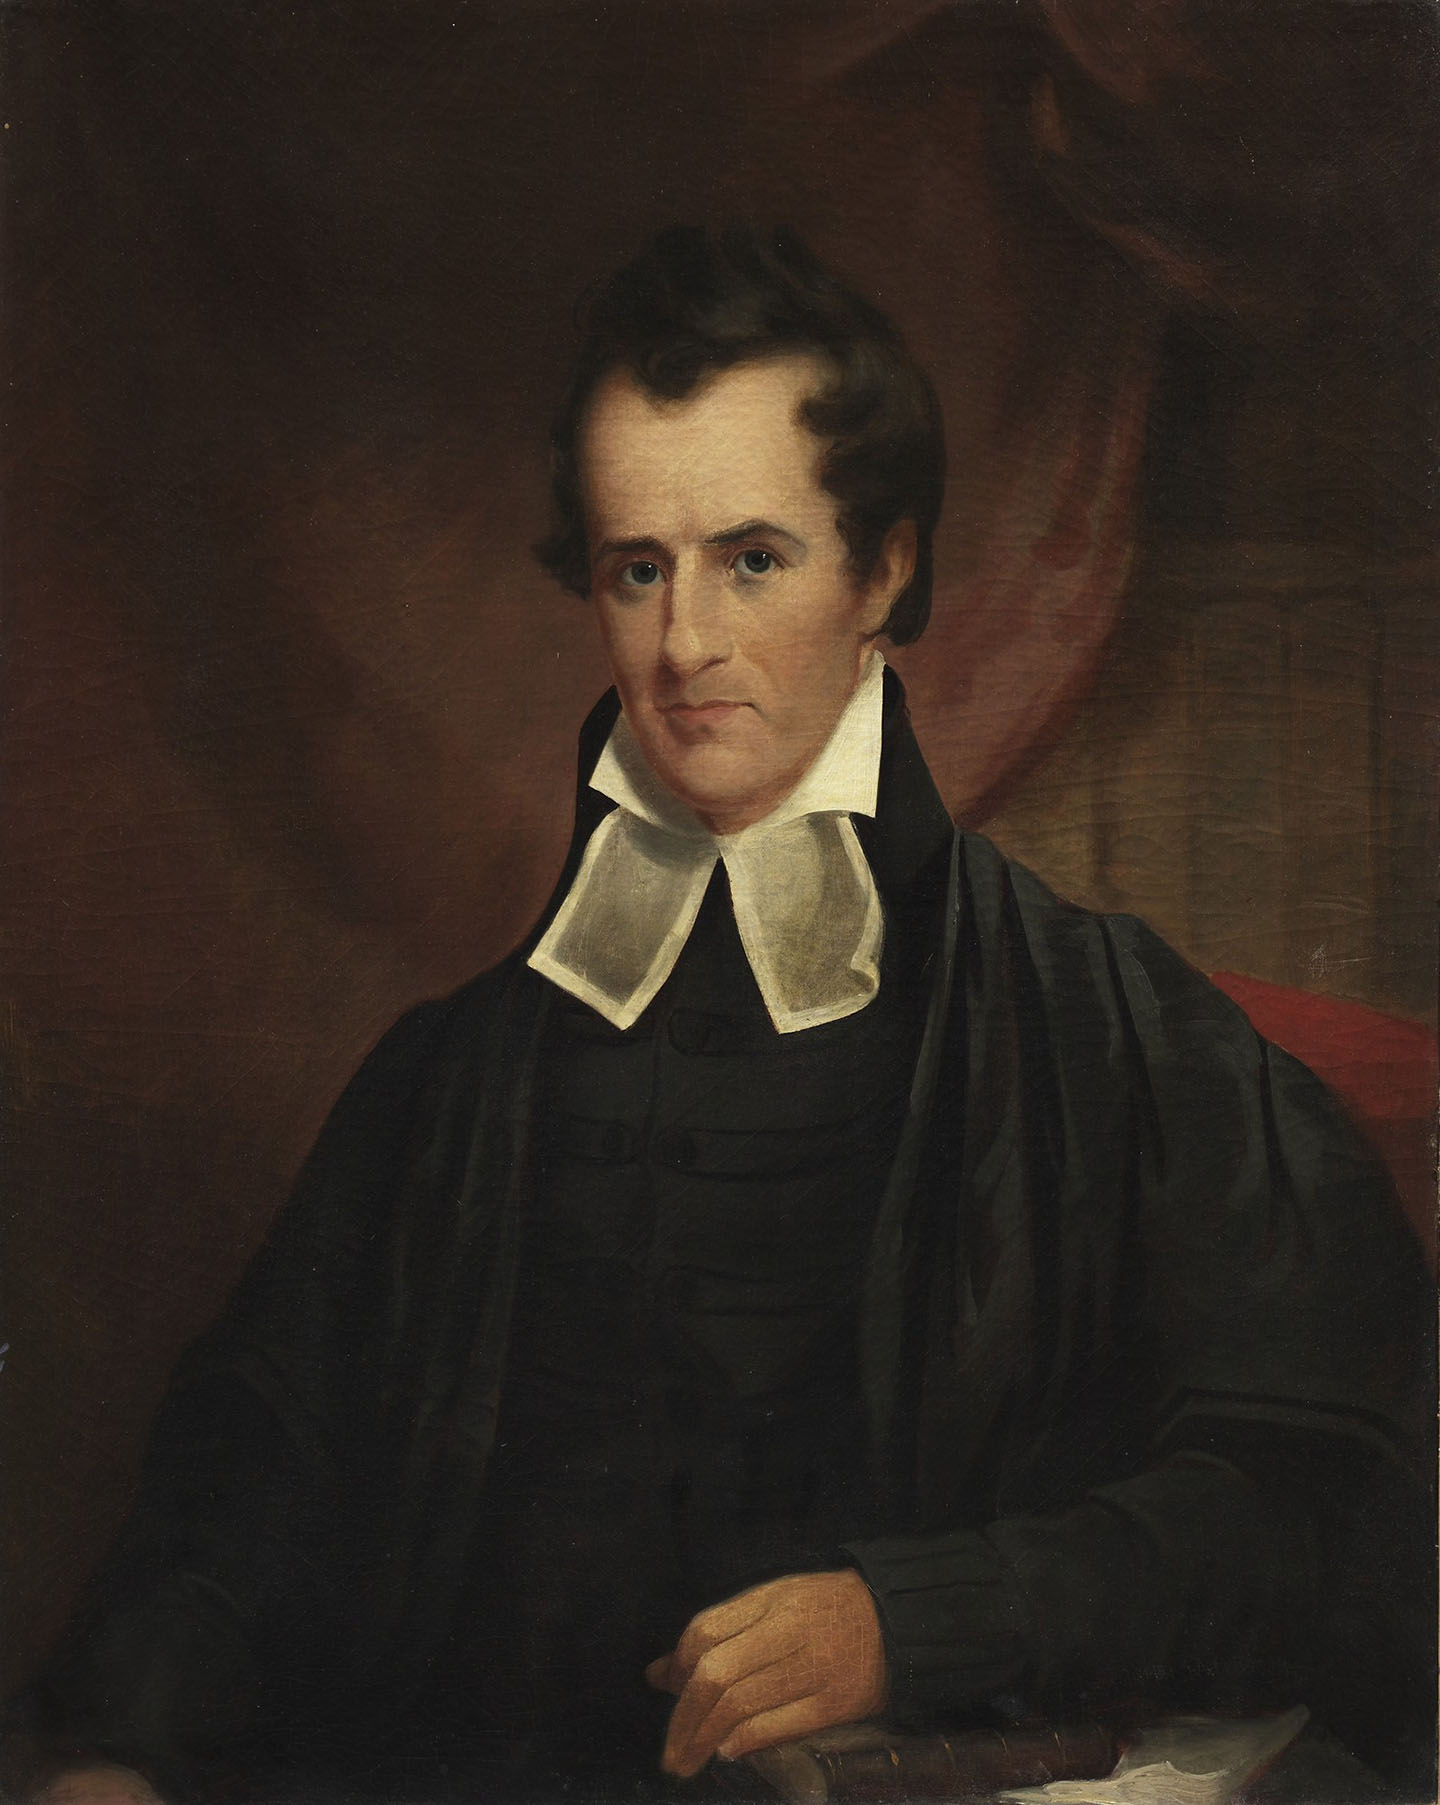 Bức chân dung của mục sư Philip Lindsley, khoảng năm 1850, do họa sĩ George Dury vẽ. Sơn dầu trên vải canvas. Bảo tàng Nghệ thuật Đại học Princeton, New Jersey. (Ảnh: Tài liệu công cộng)